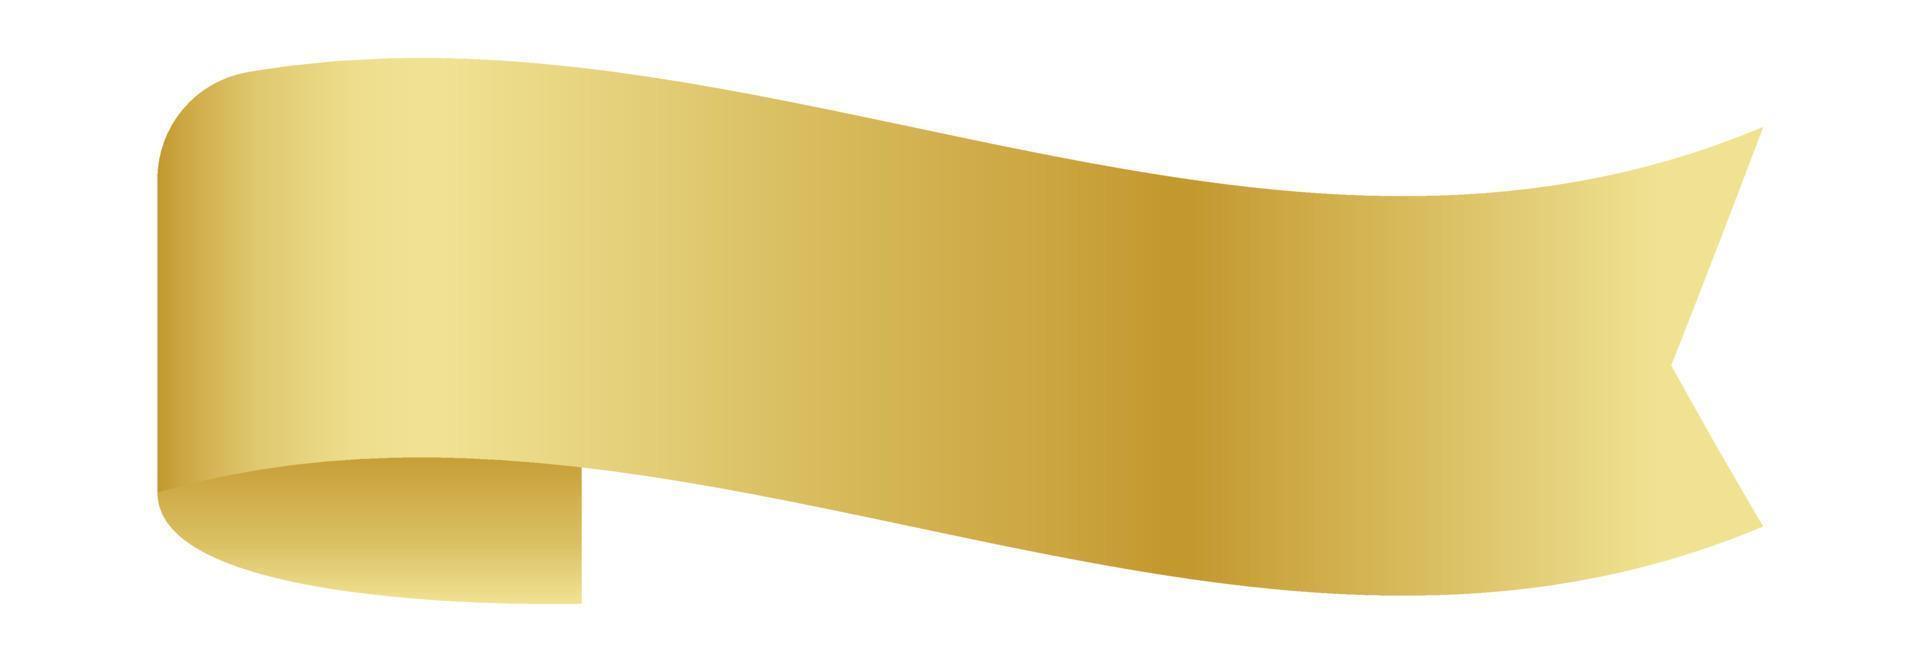 goldenes Band, Aufkleber goldenes Band, goldenes Etikett vektor